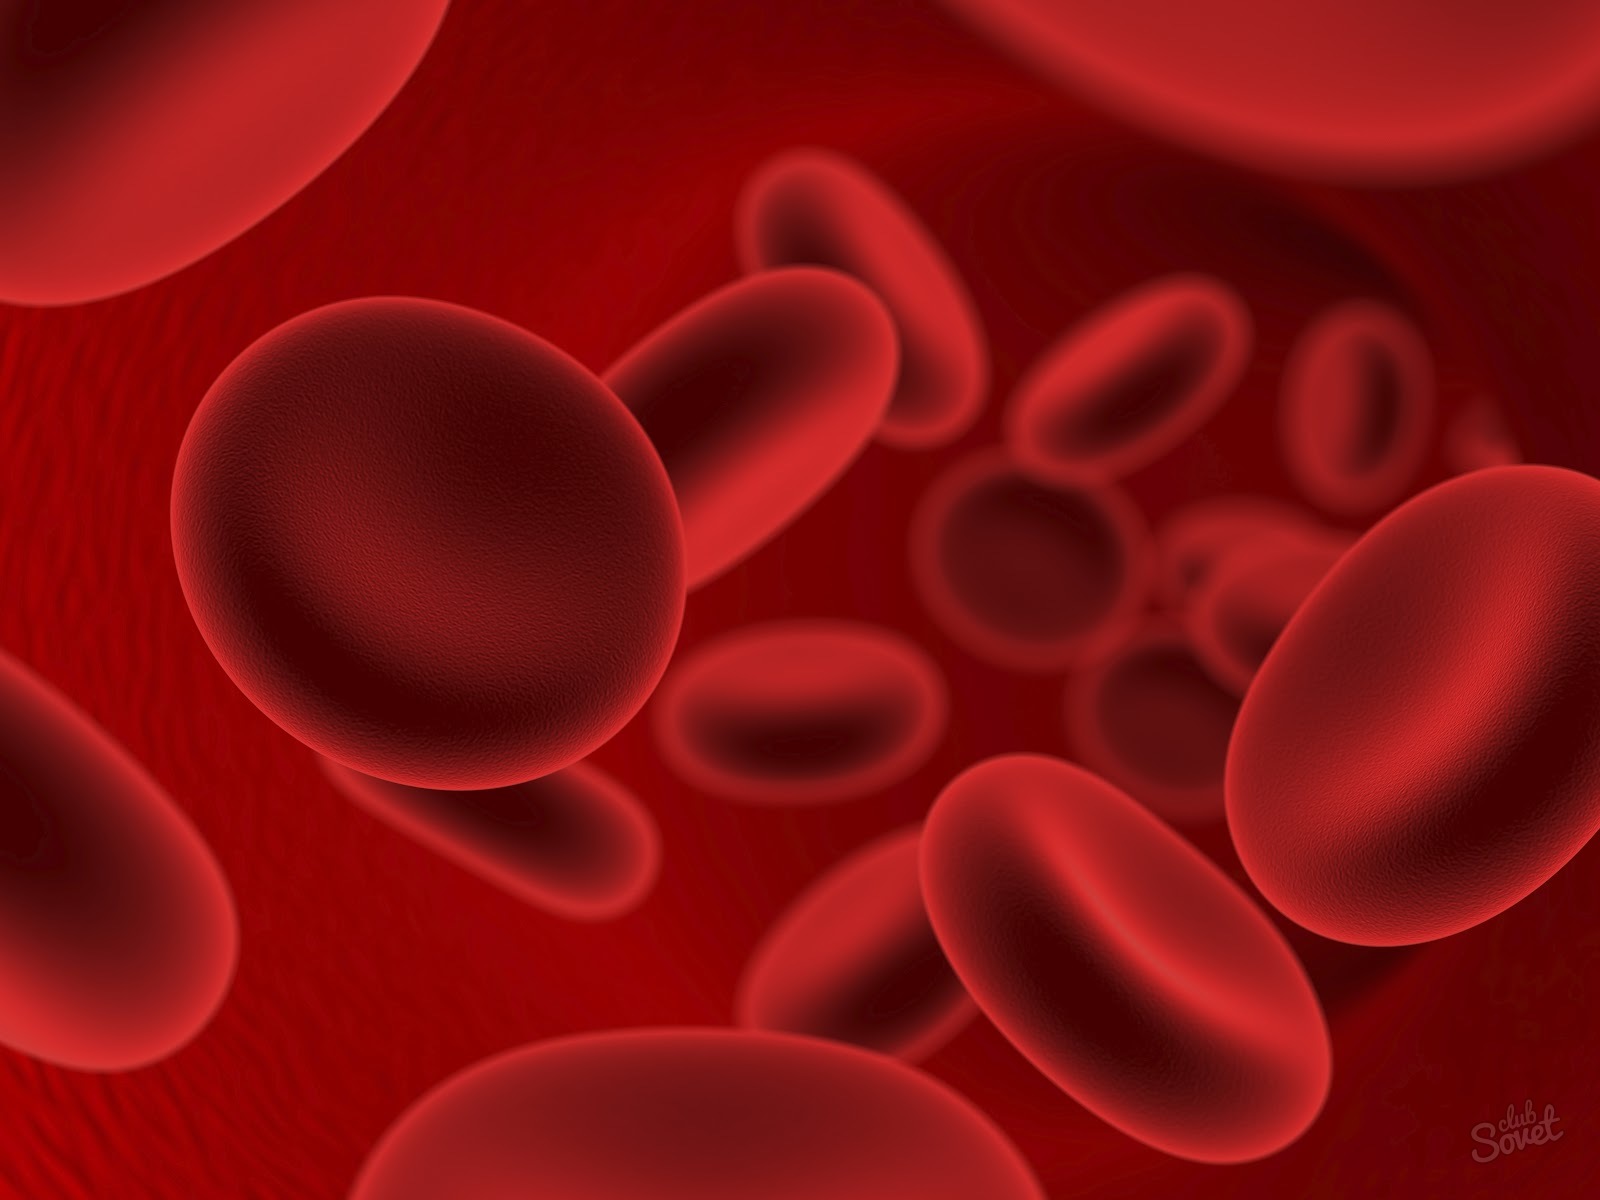 Πώς να προσδιορίσετε την ομάδα αίματος